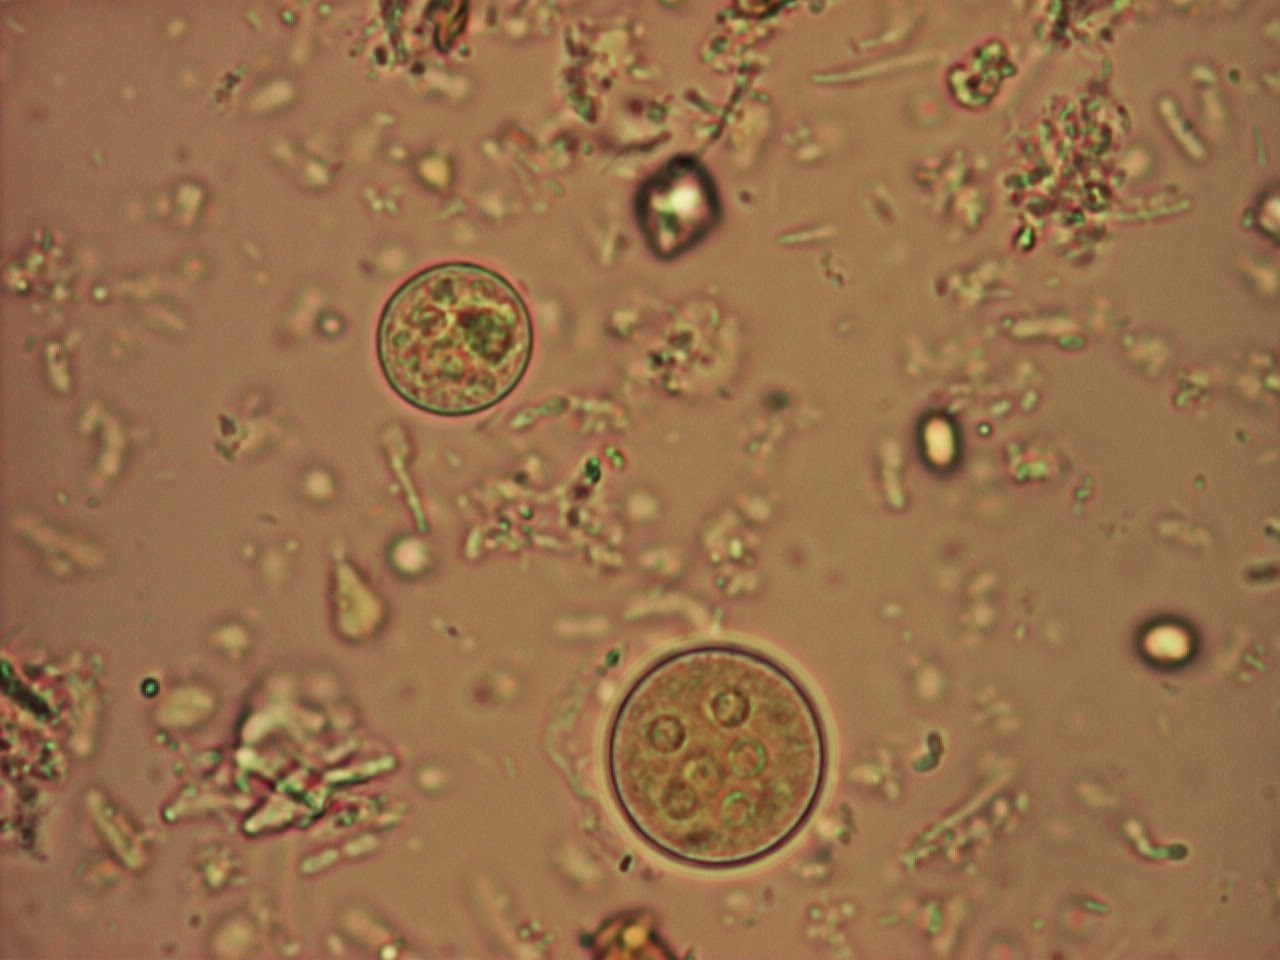 Споры в кале у взрослого. Цисты лямблии микроскопия. Цисты лямблий микроскопия кала. Циста лямблии под микроскопом. Цисты кишечной амебы (Entamoeba coli).